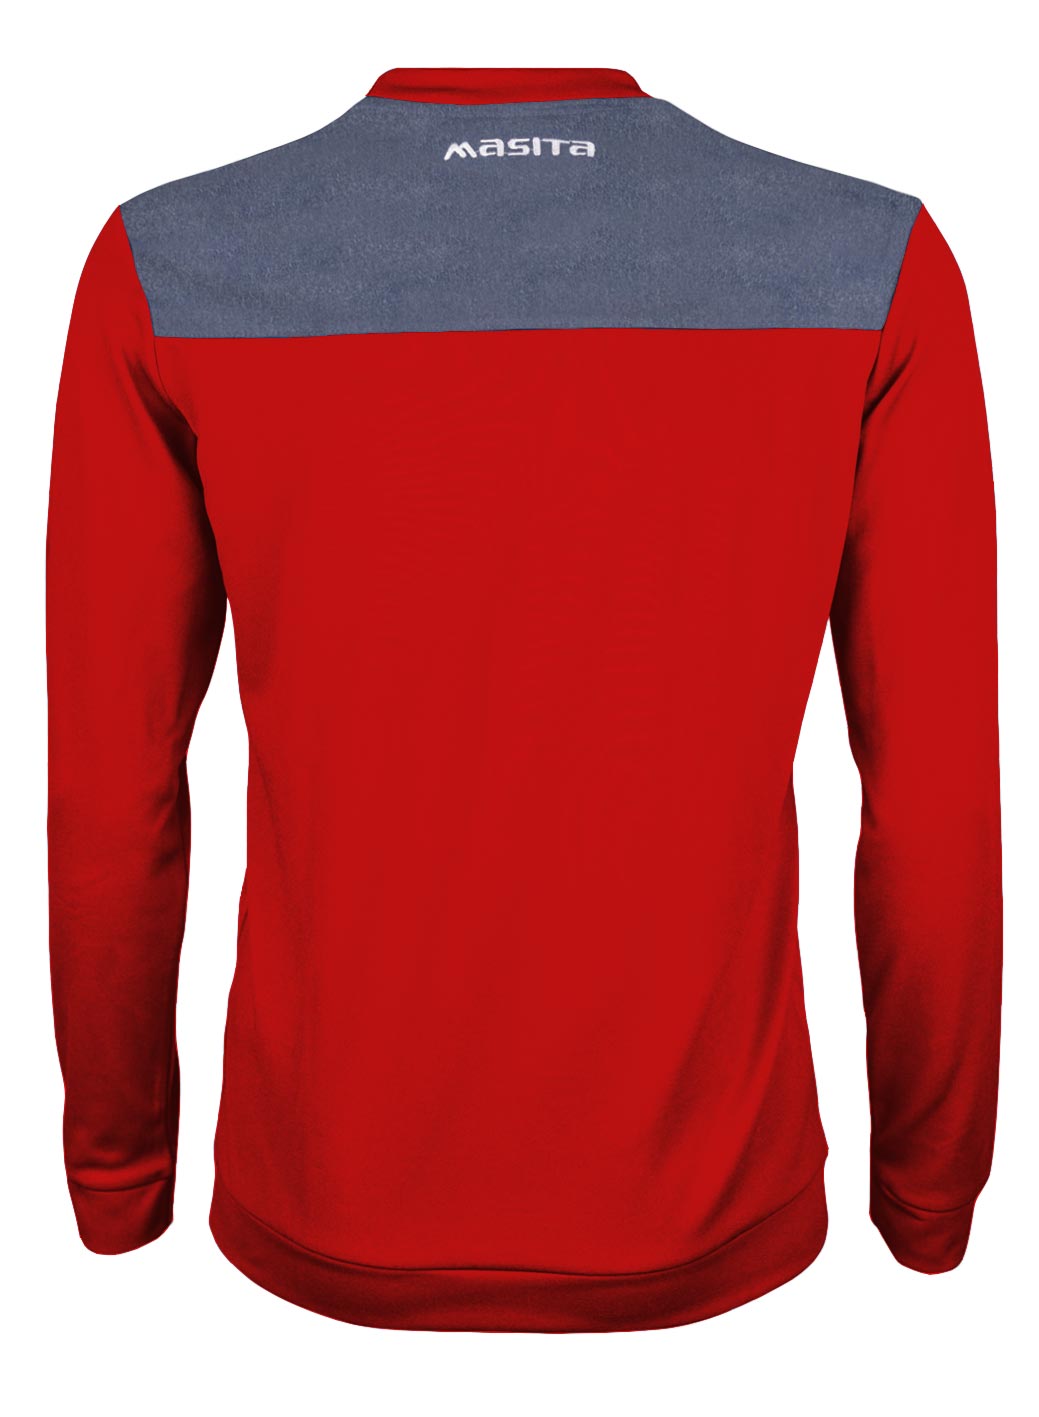 Denver Sweater Red/Melange/White